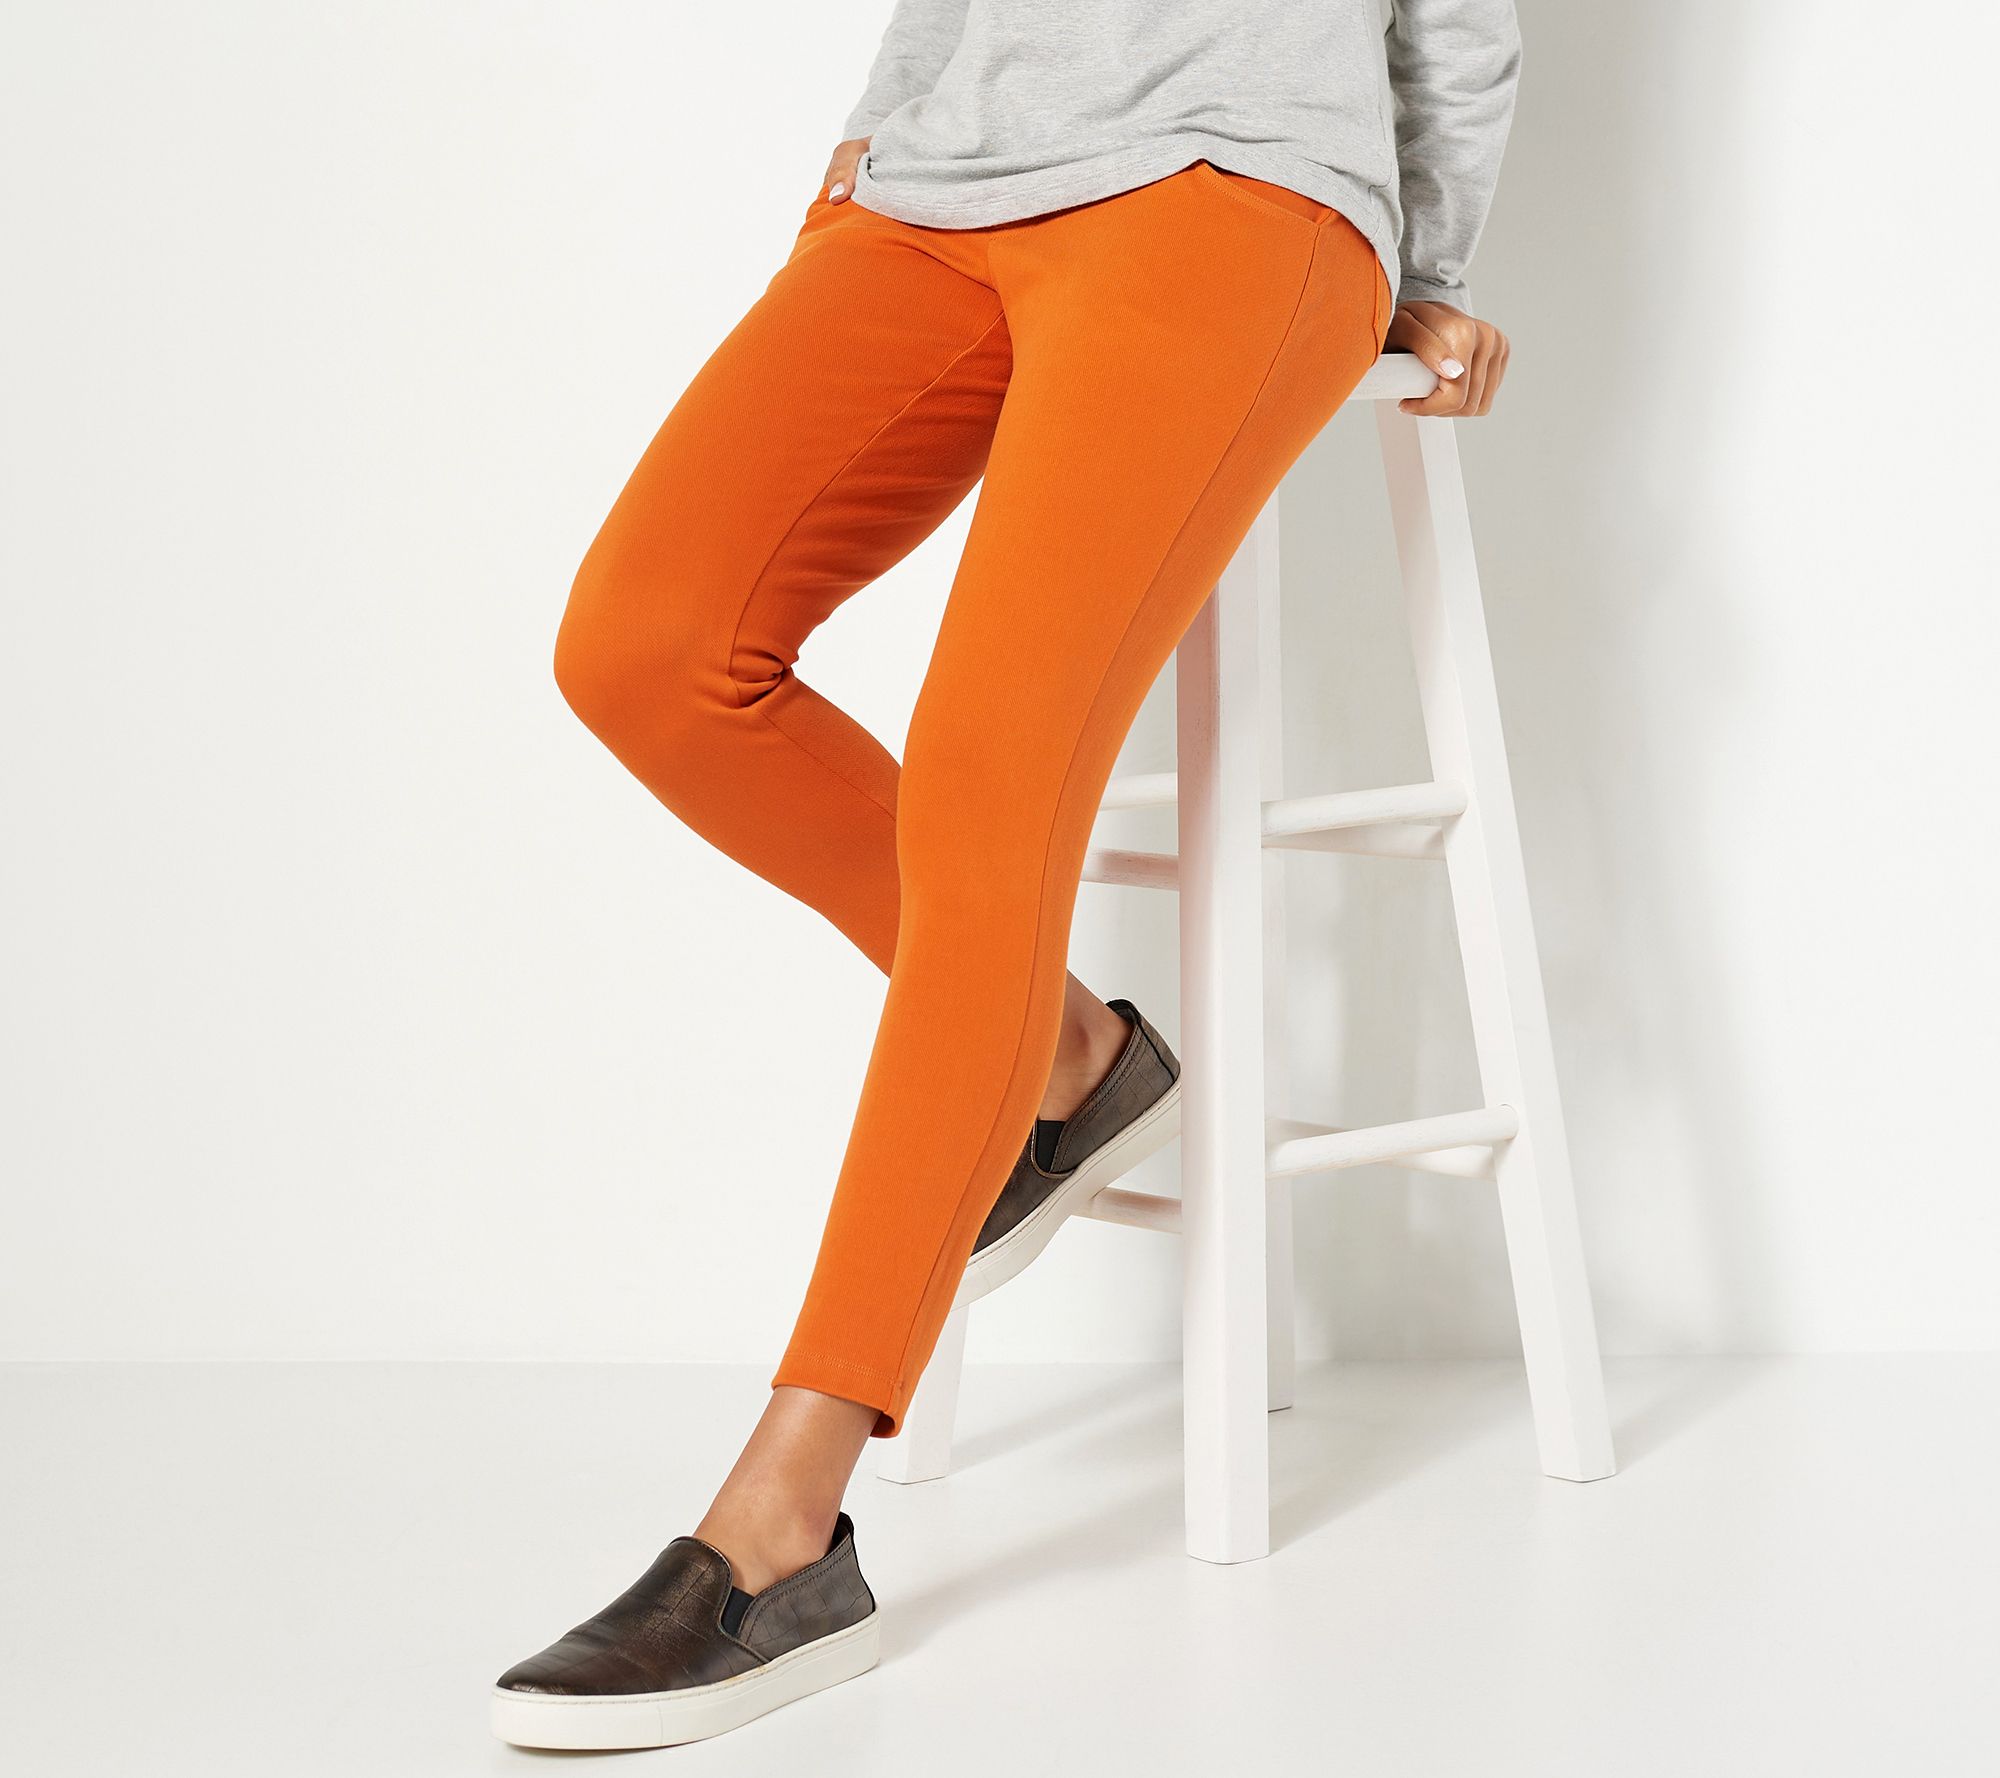 Morrio Orange Cotton Lycra Ankle Length Legging,Medium for Women - Price  History